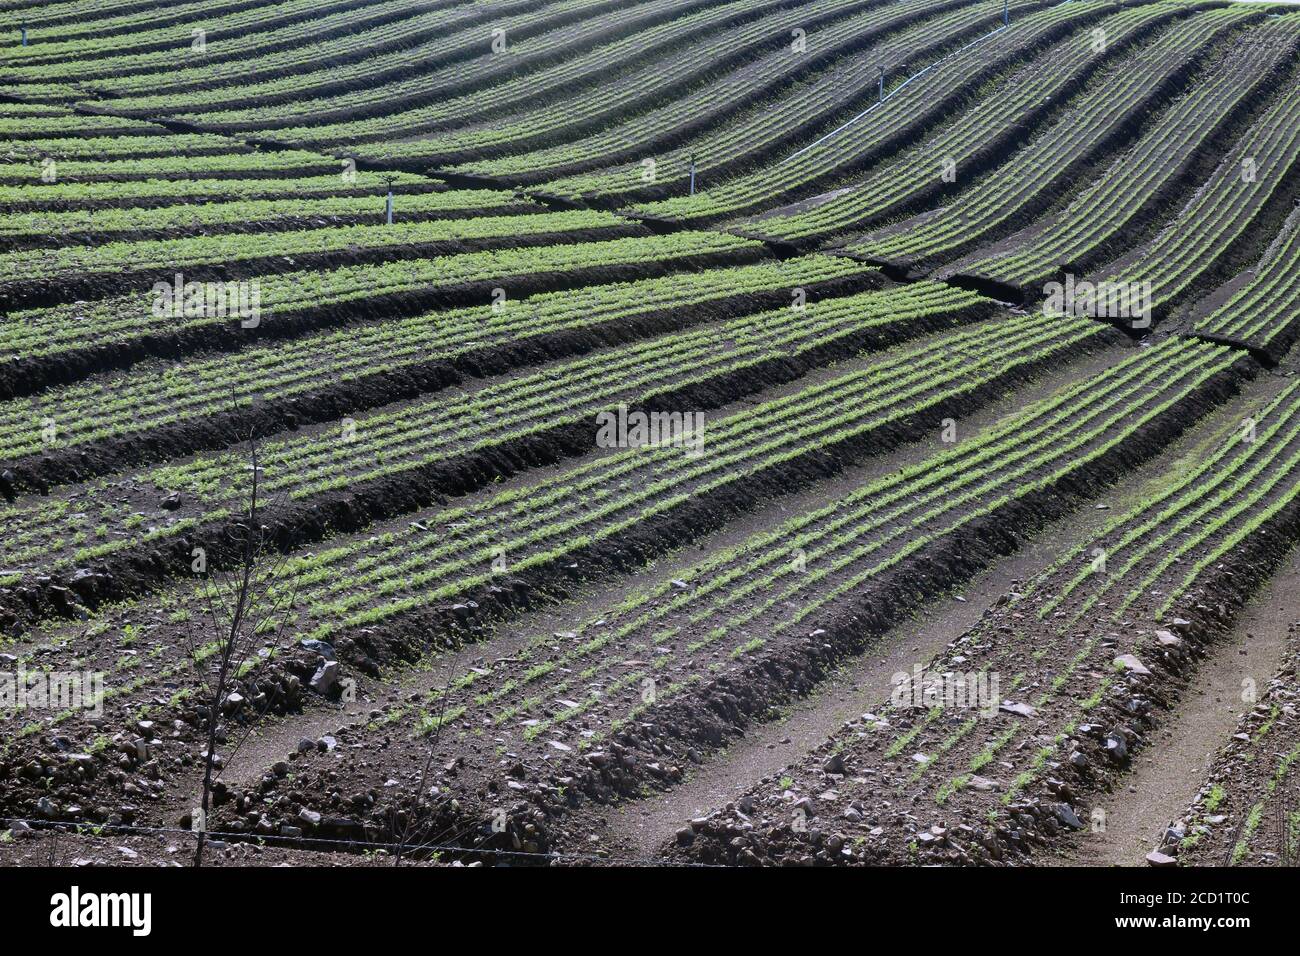 Immense carrot plantations in the state of Rio Grande do sul, Brazil Stock Photo